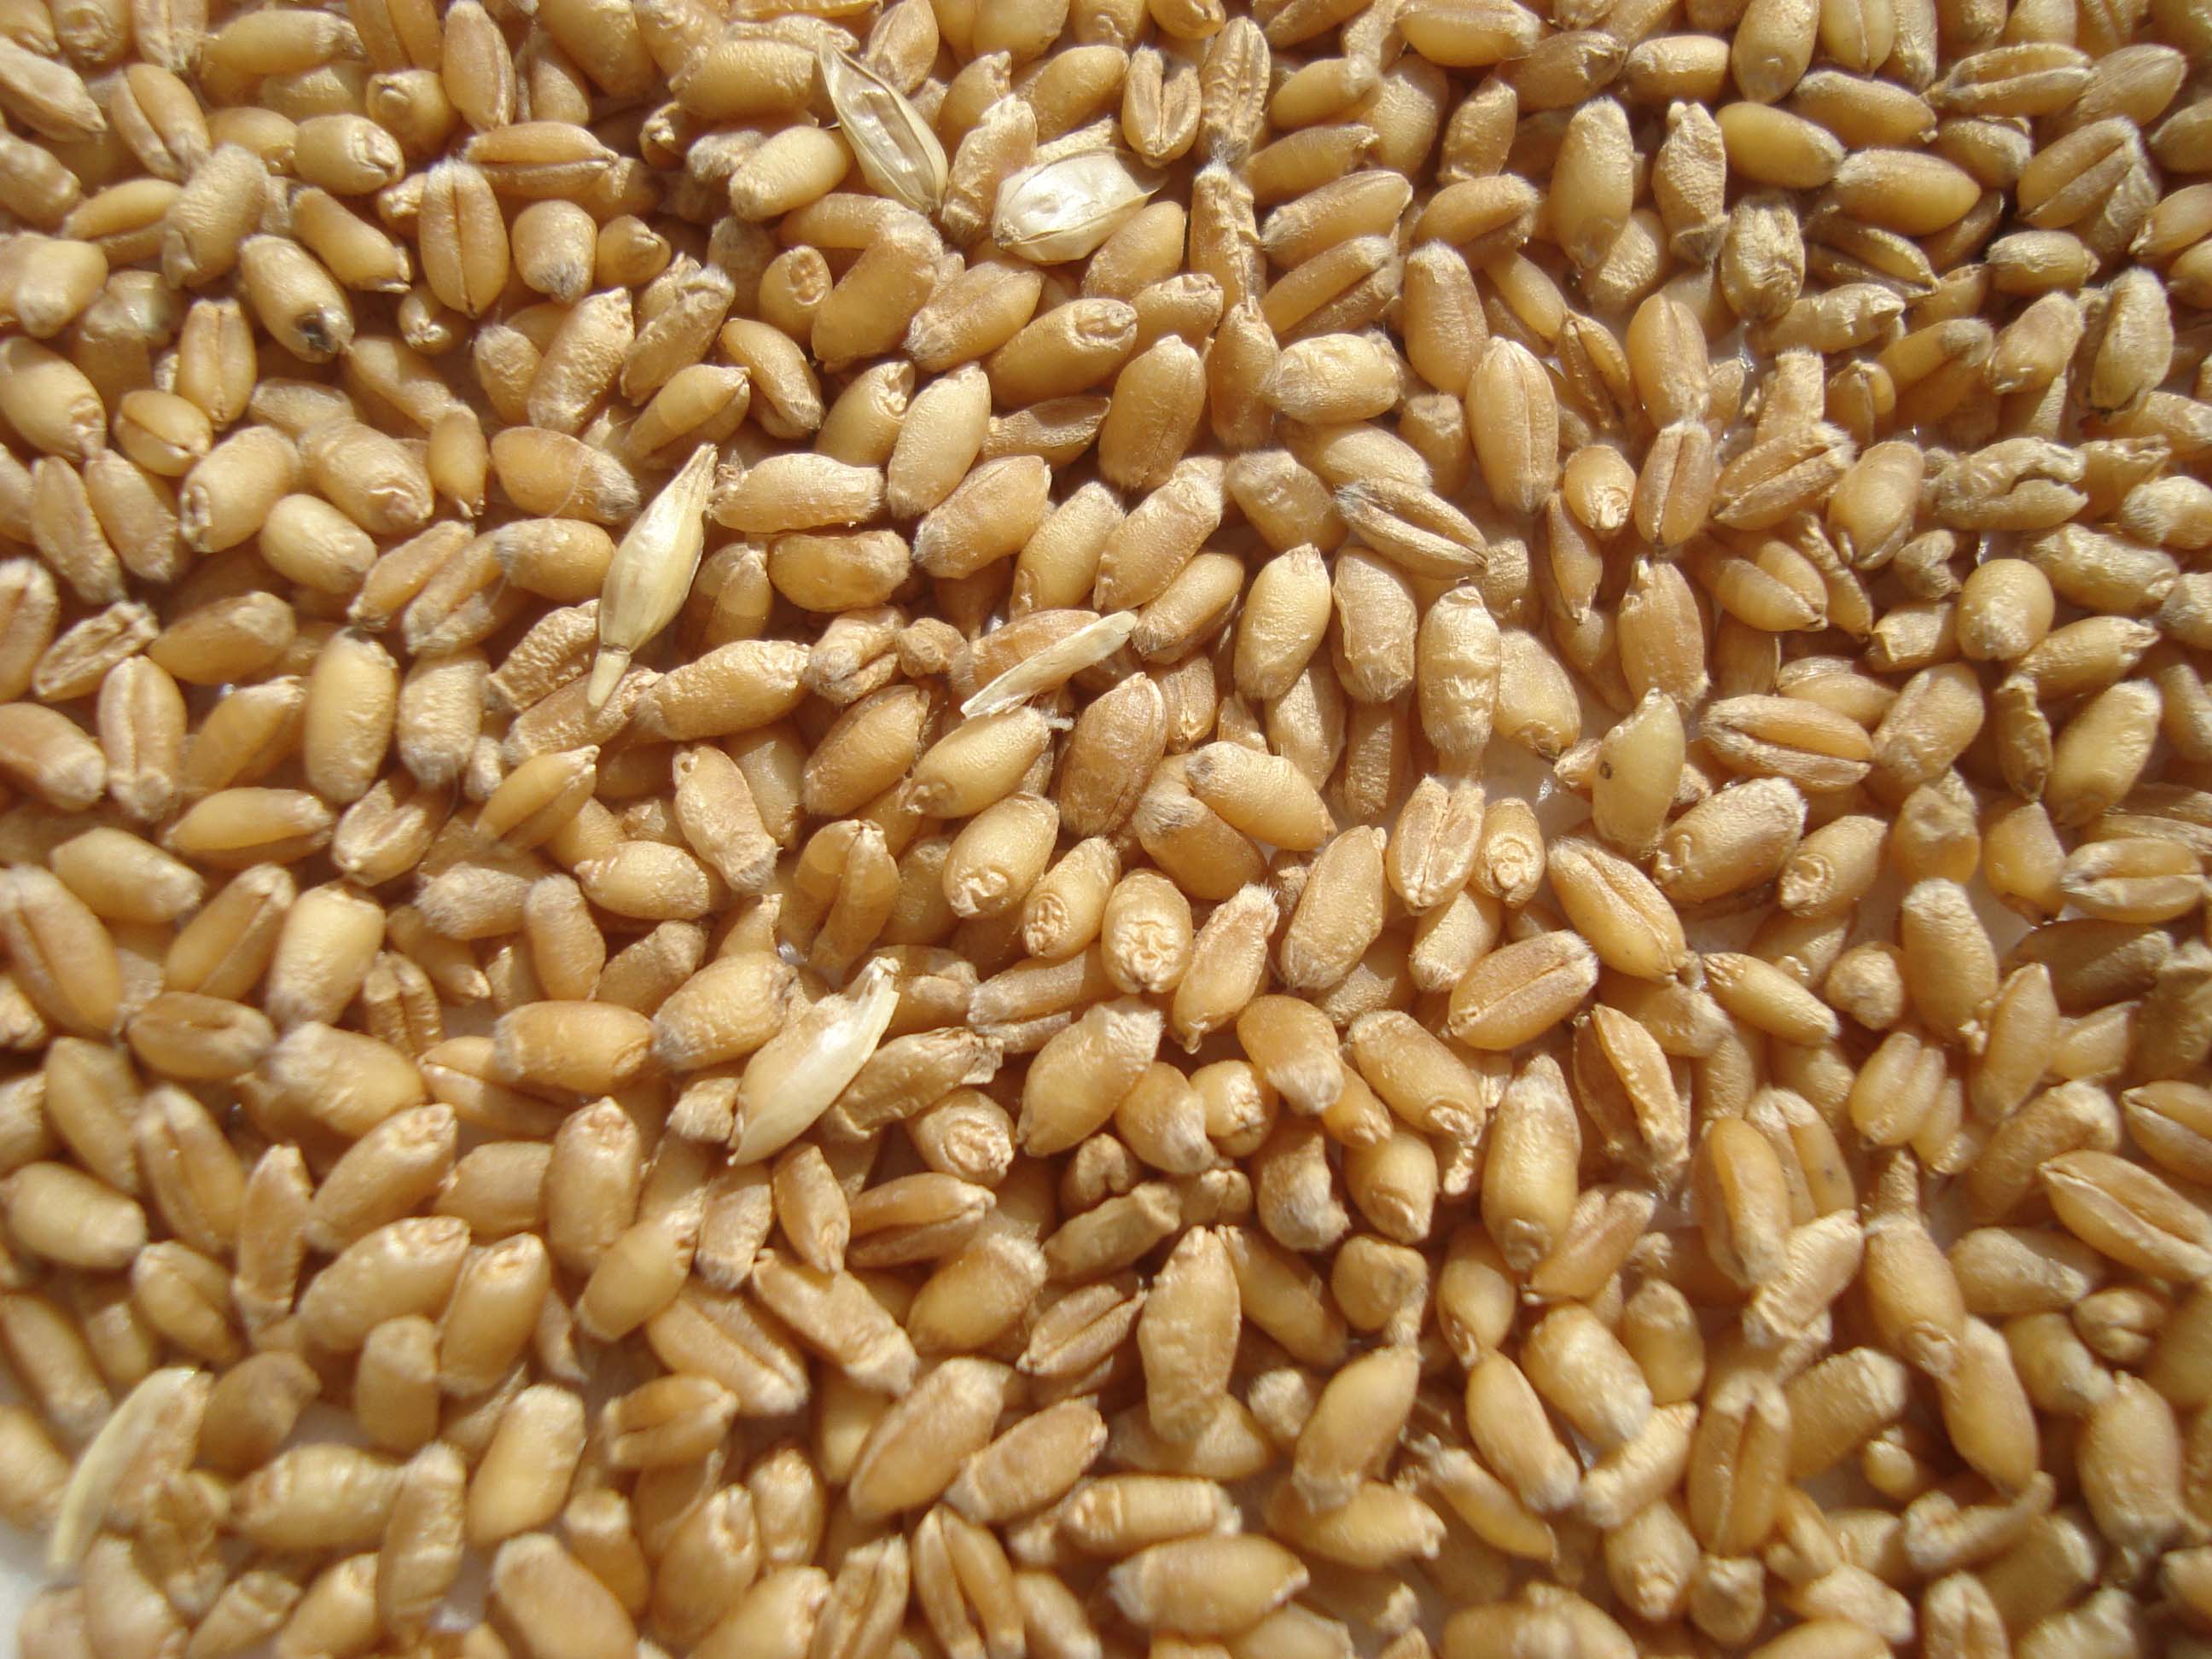 2021年河南小麦整体质量较好 优质强筋小麦种植范围进一步扩大